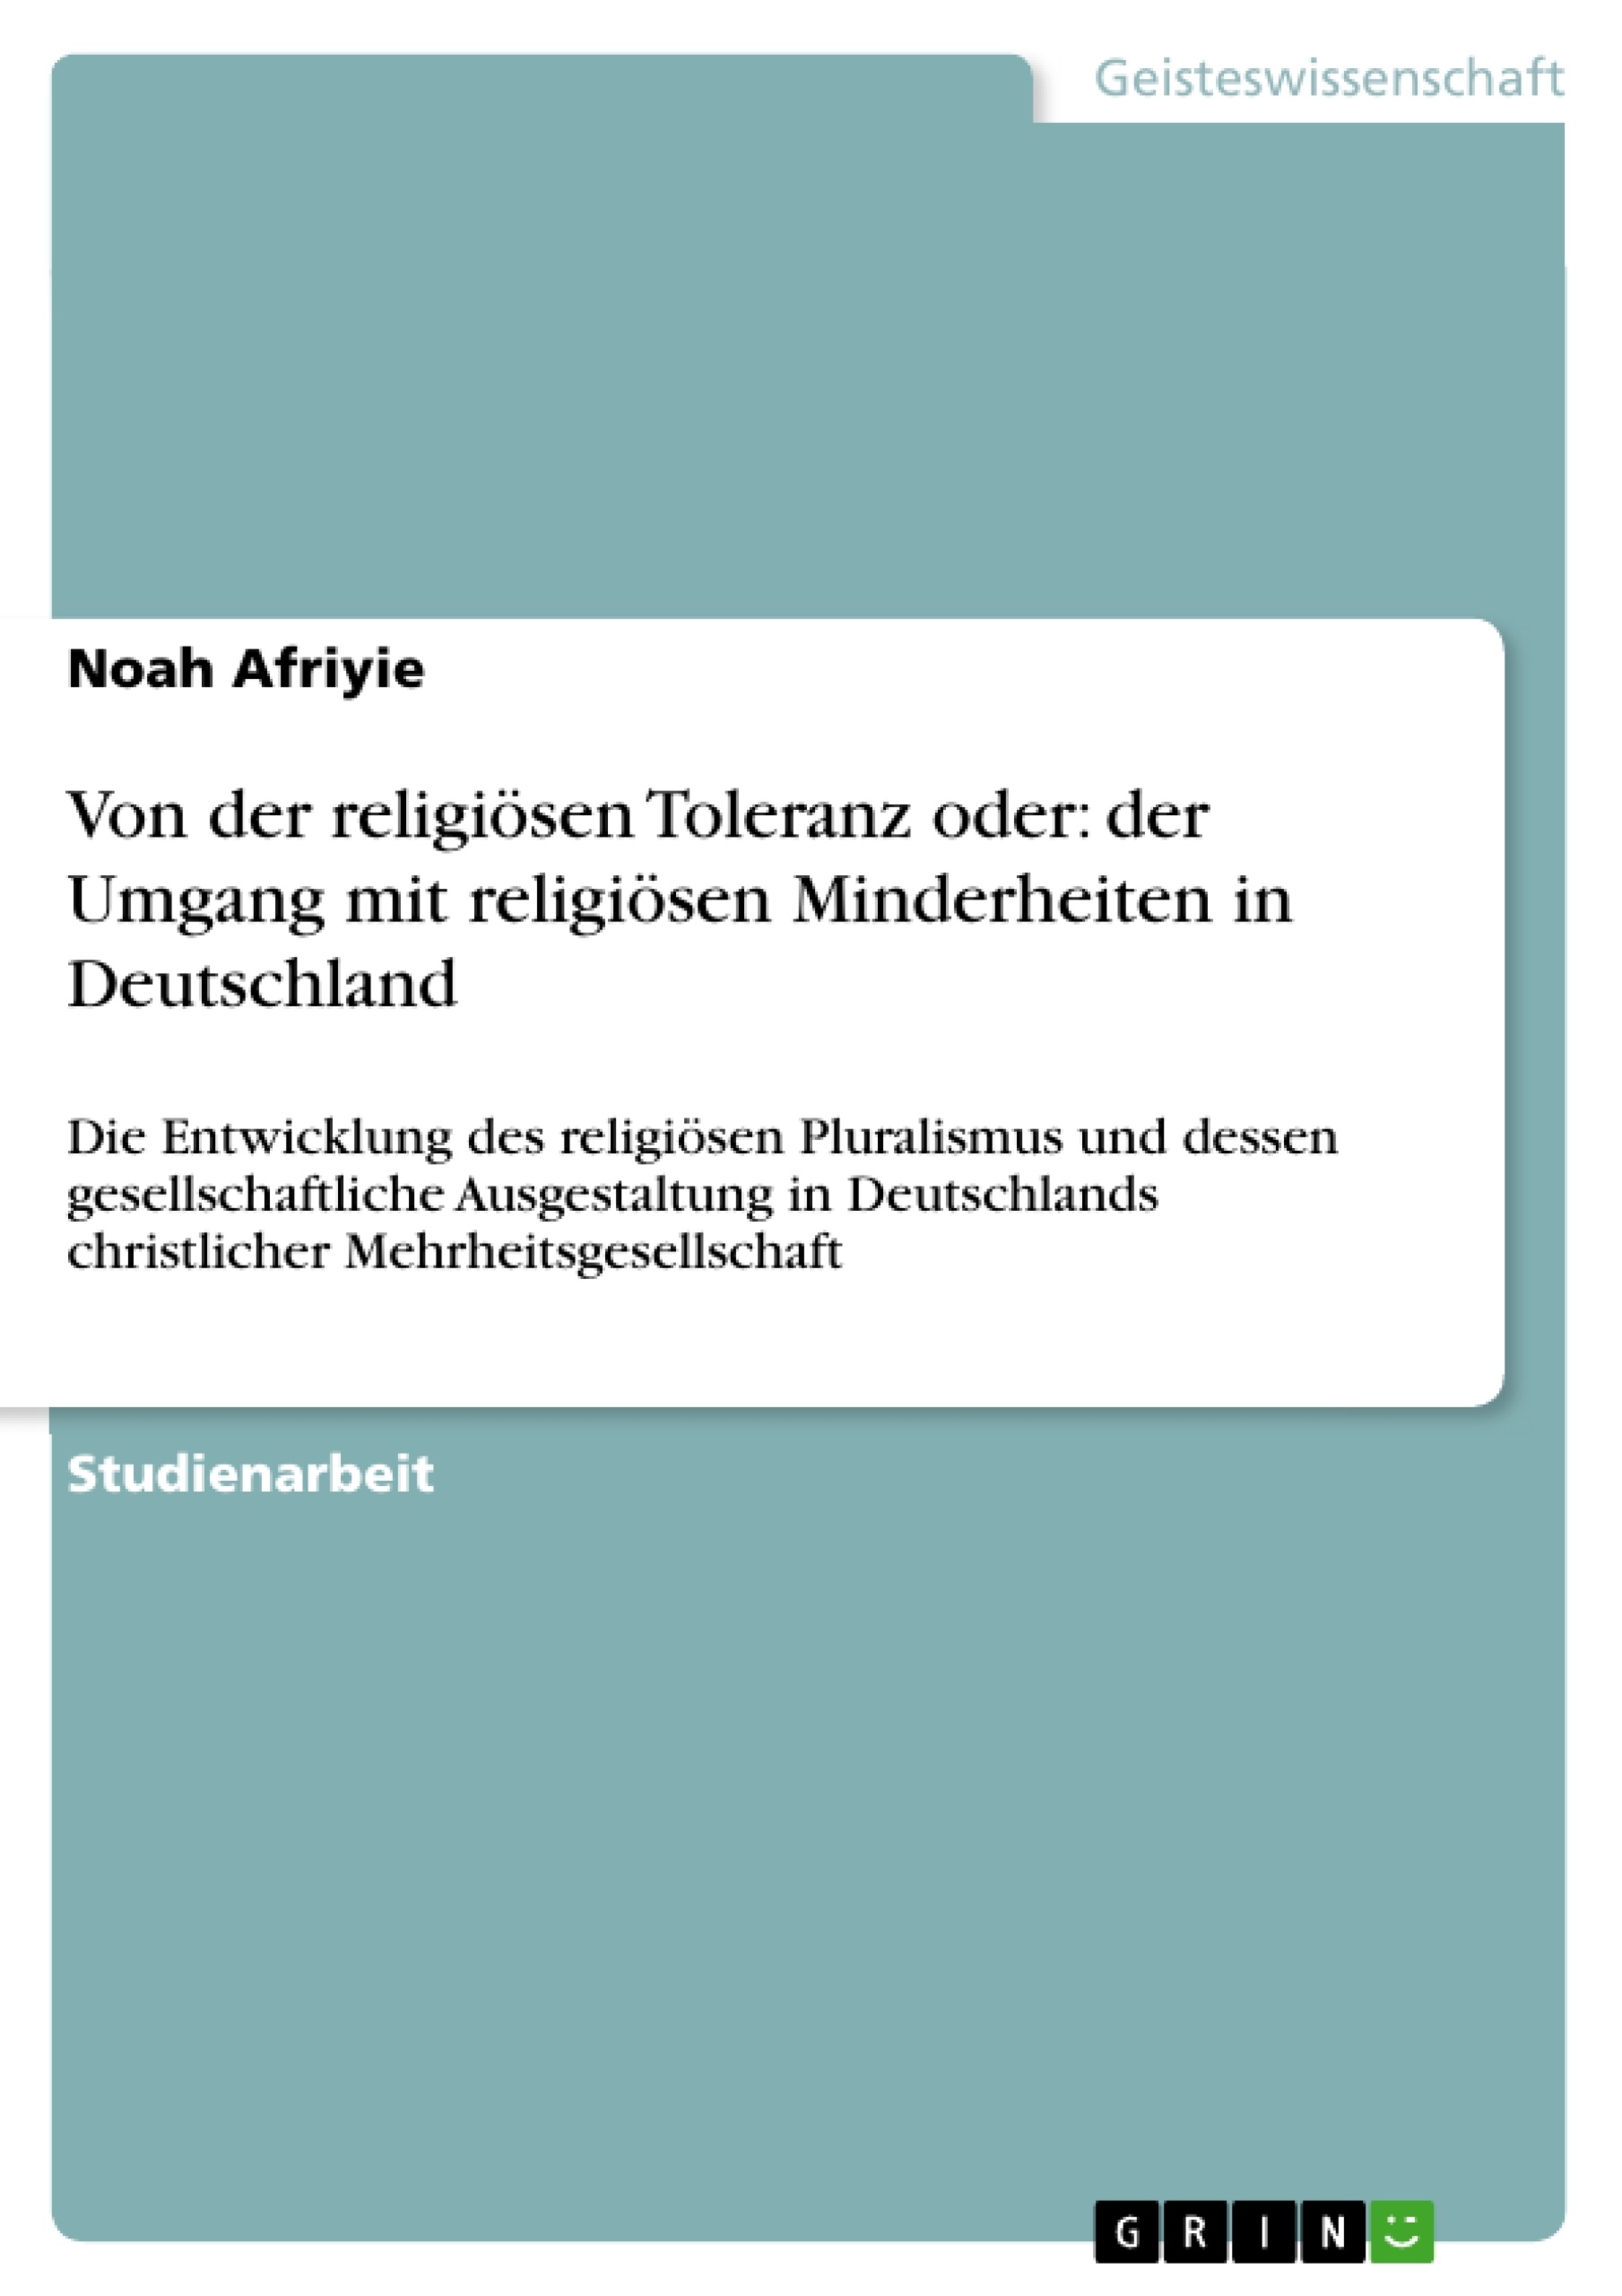 Titre: Von der religiösen Toleranz oder: der Umgang mit religiösen Minderheiten in Deutschland